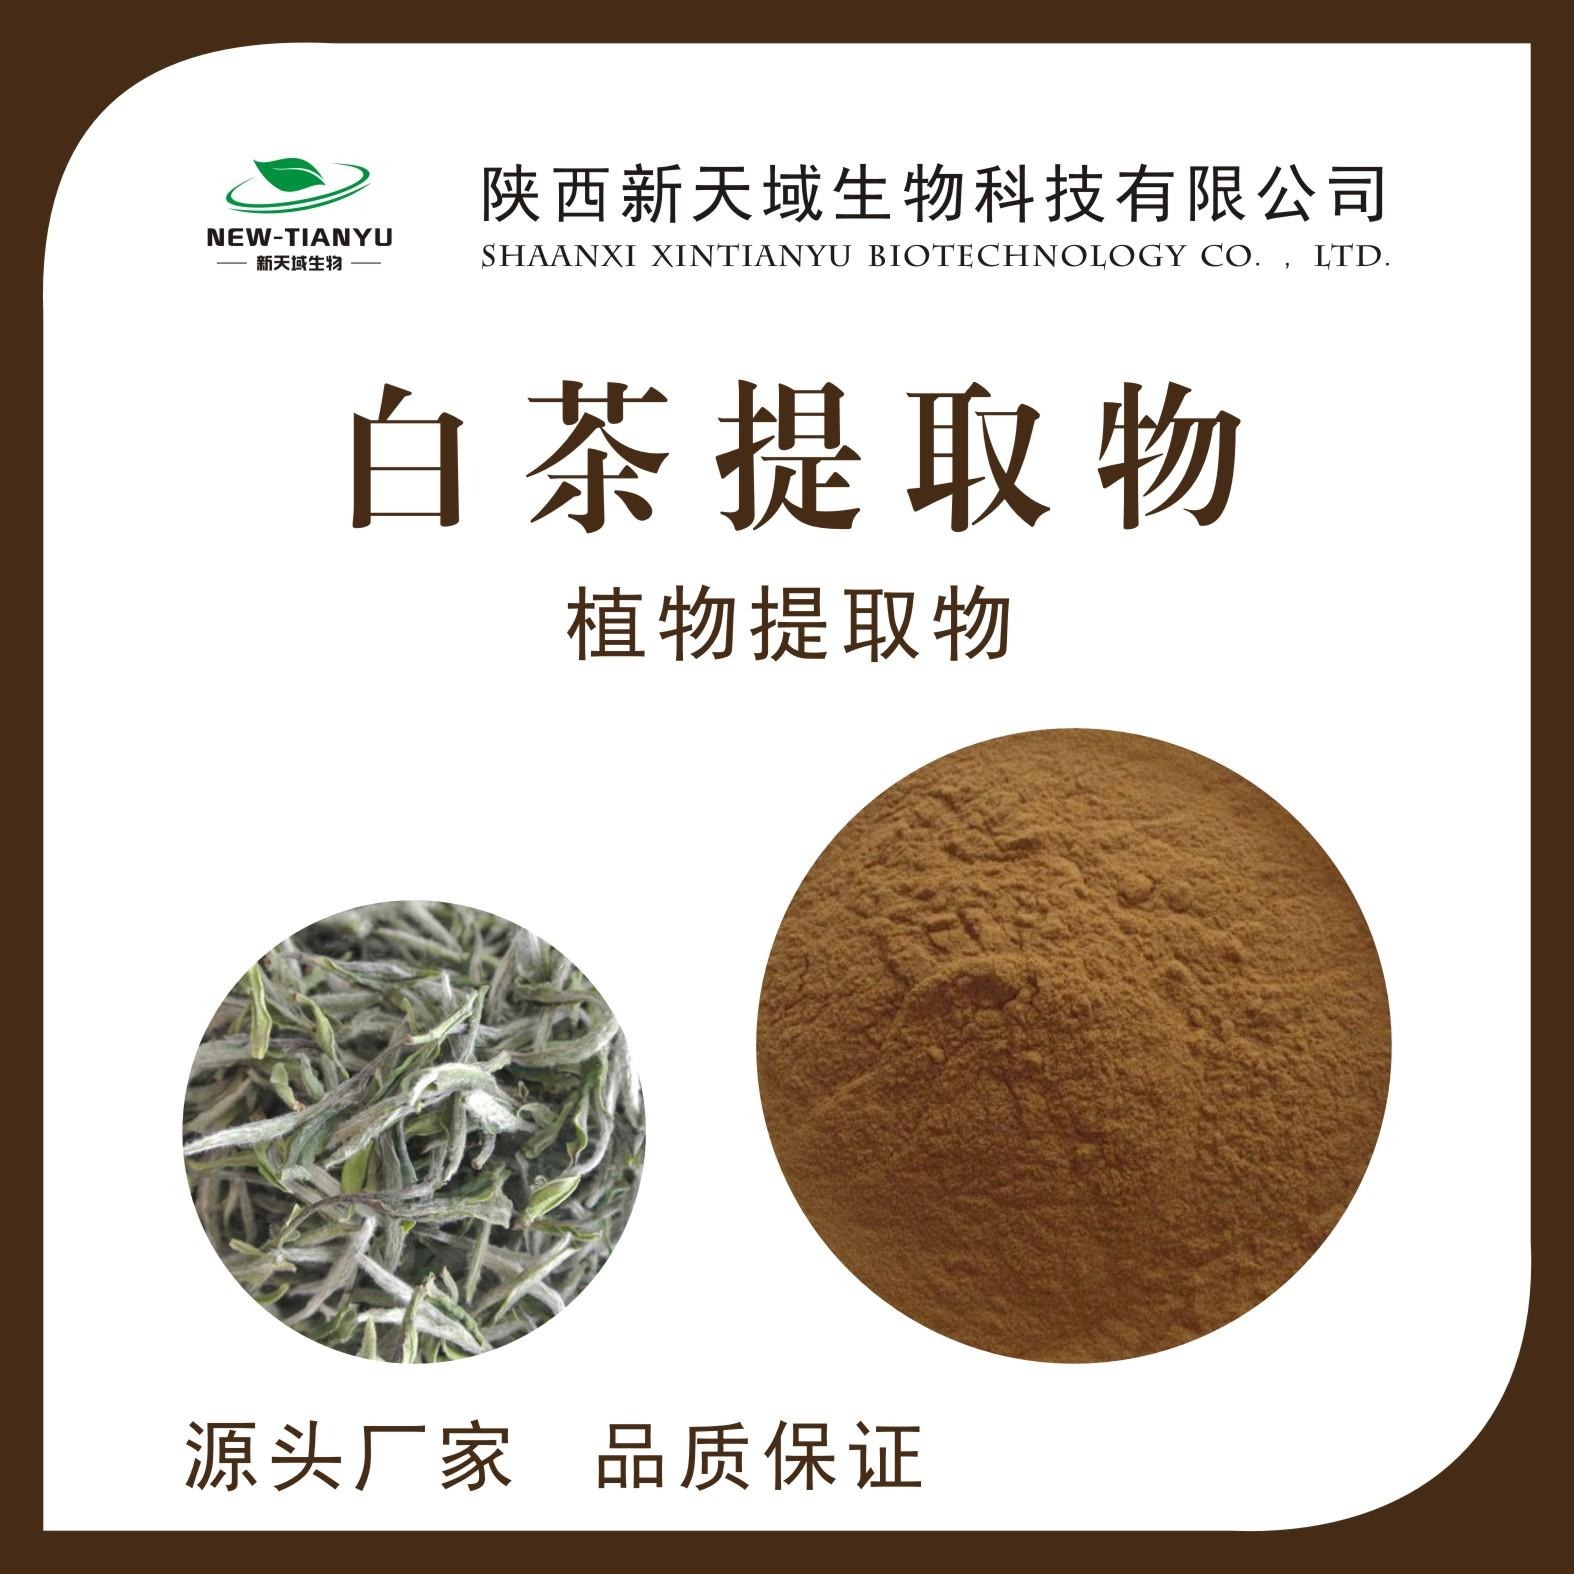 白茶提取物 白茶浓缩粉 白茶喷雾干燥粉 生产厂家 厂家现货图片